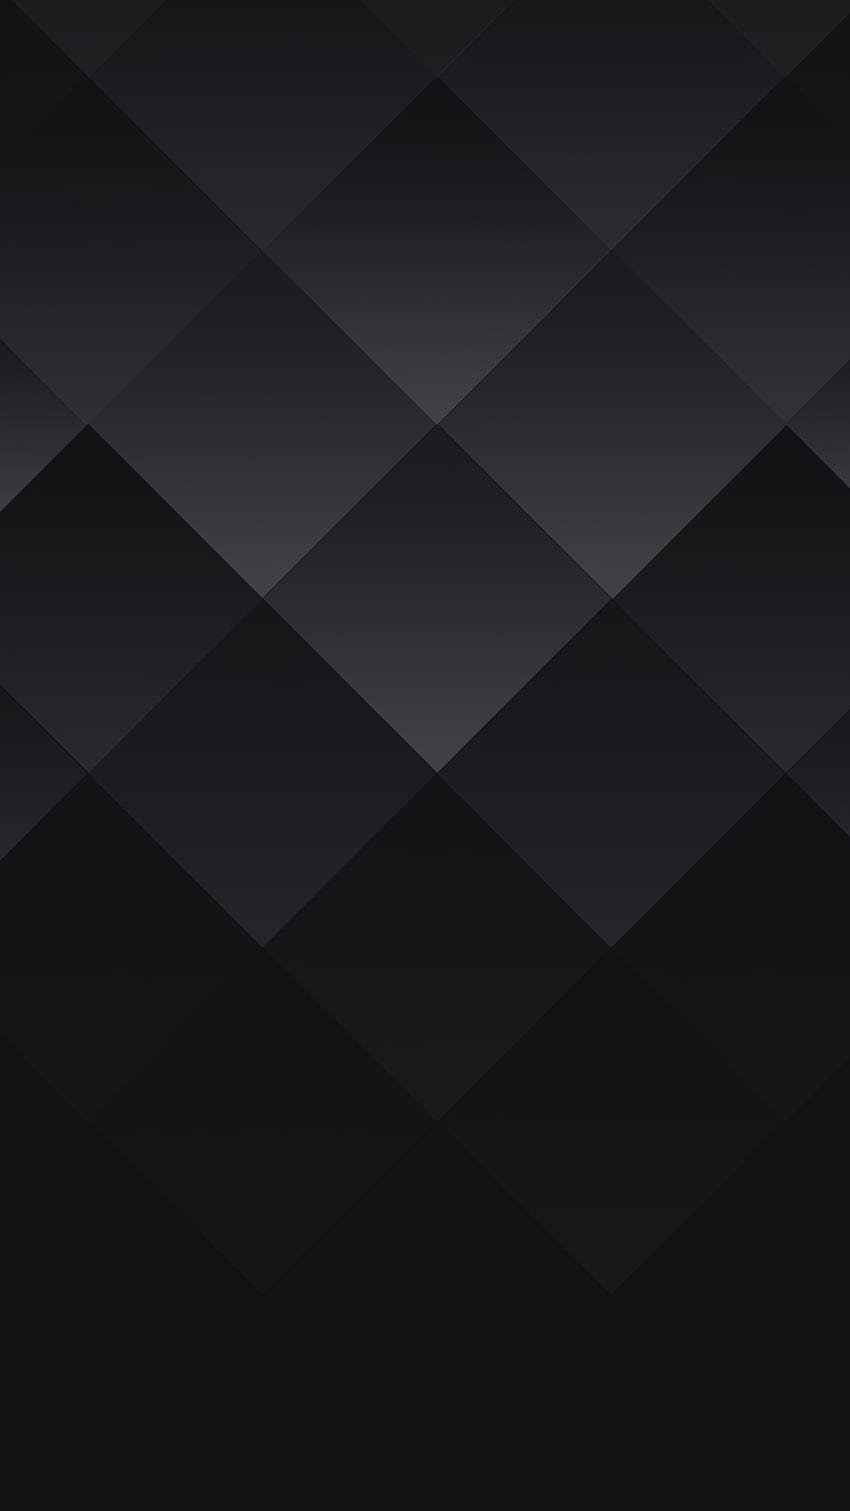 BlackBerry KEYone .png 1 440×2 560 pixels. Papel De Parede De Madeira, Papel De Parede Android, Papel De Parede Celular, Dark Pixel Papel de parede de celular HD